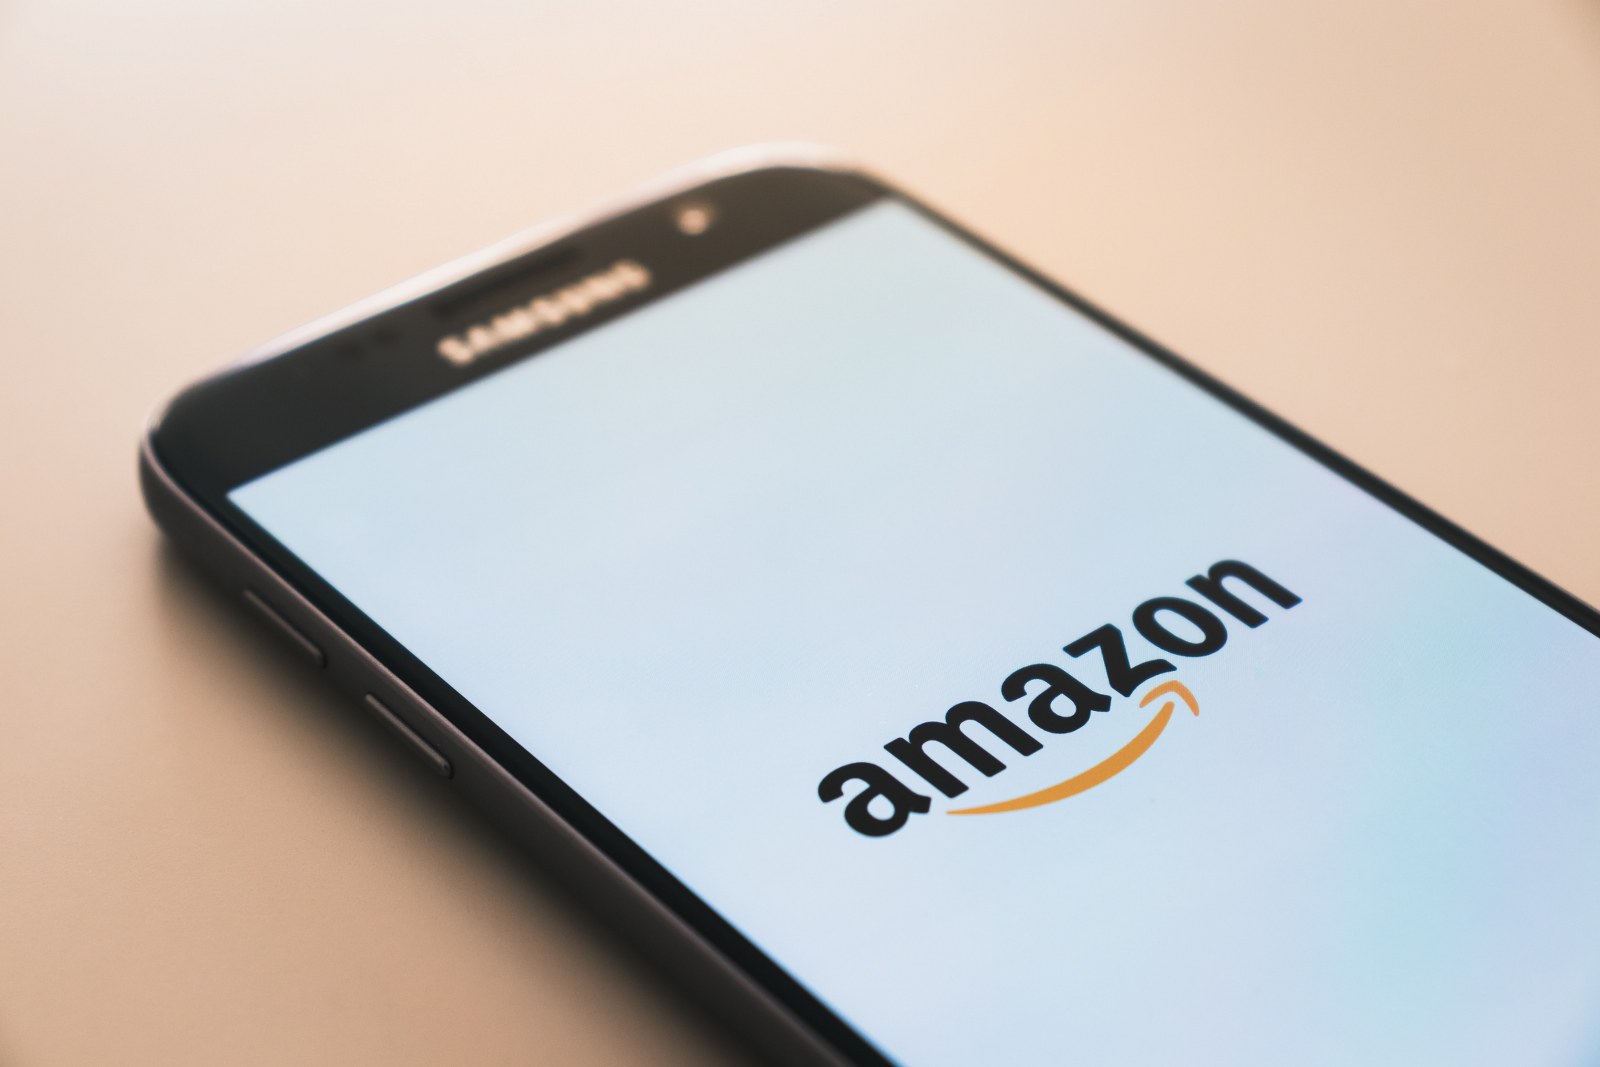 Pengalaman Belanja Imersif Baru "Amazon Anywhere" Hadir untuk Pengguna Game dan Aplikasi AR